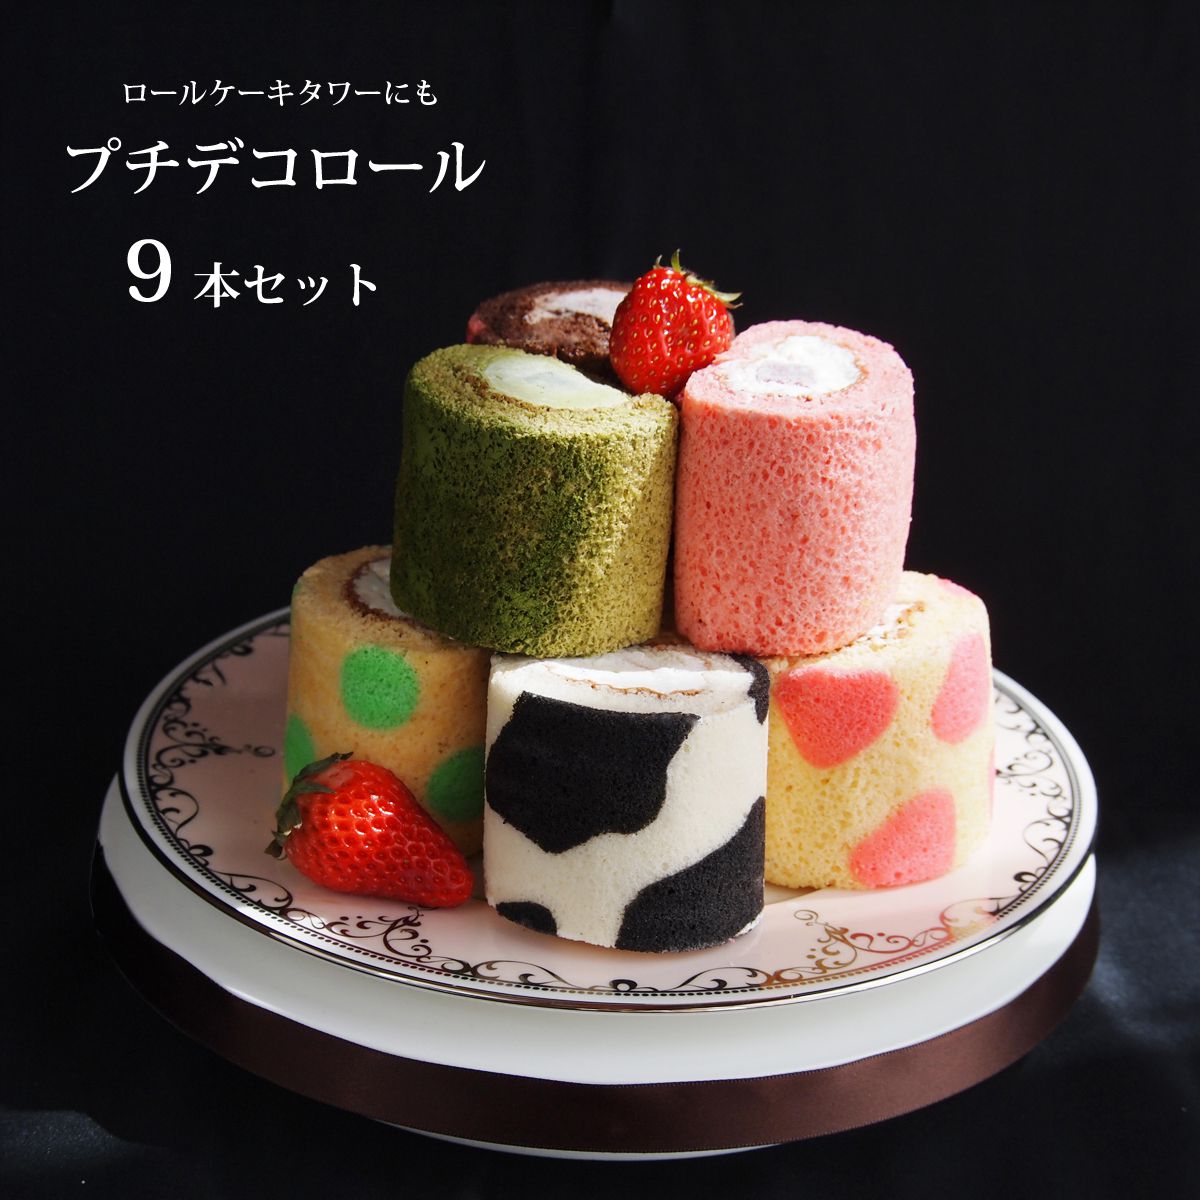 最も人気のある 赤ちゃん 食べれる ケーキ 3350 赤ちゃん 食べれる ケーキ 札幌